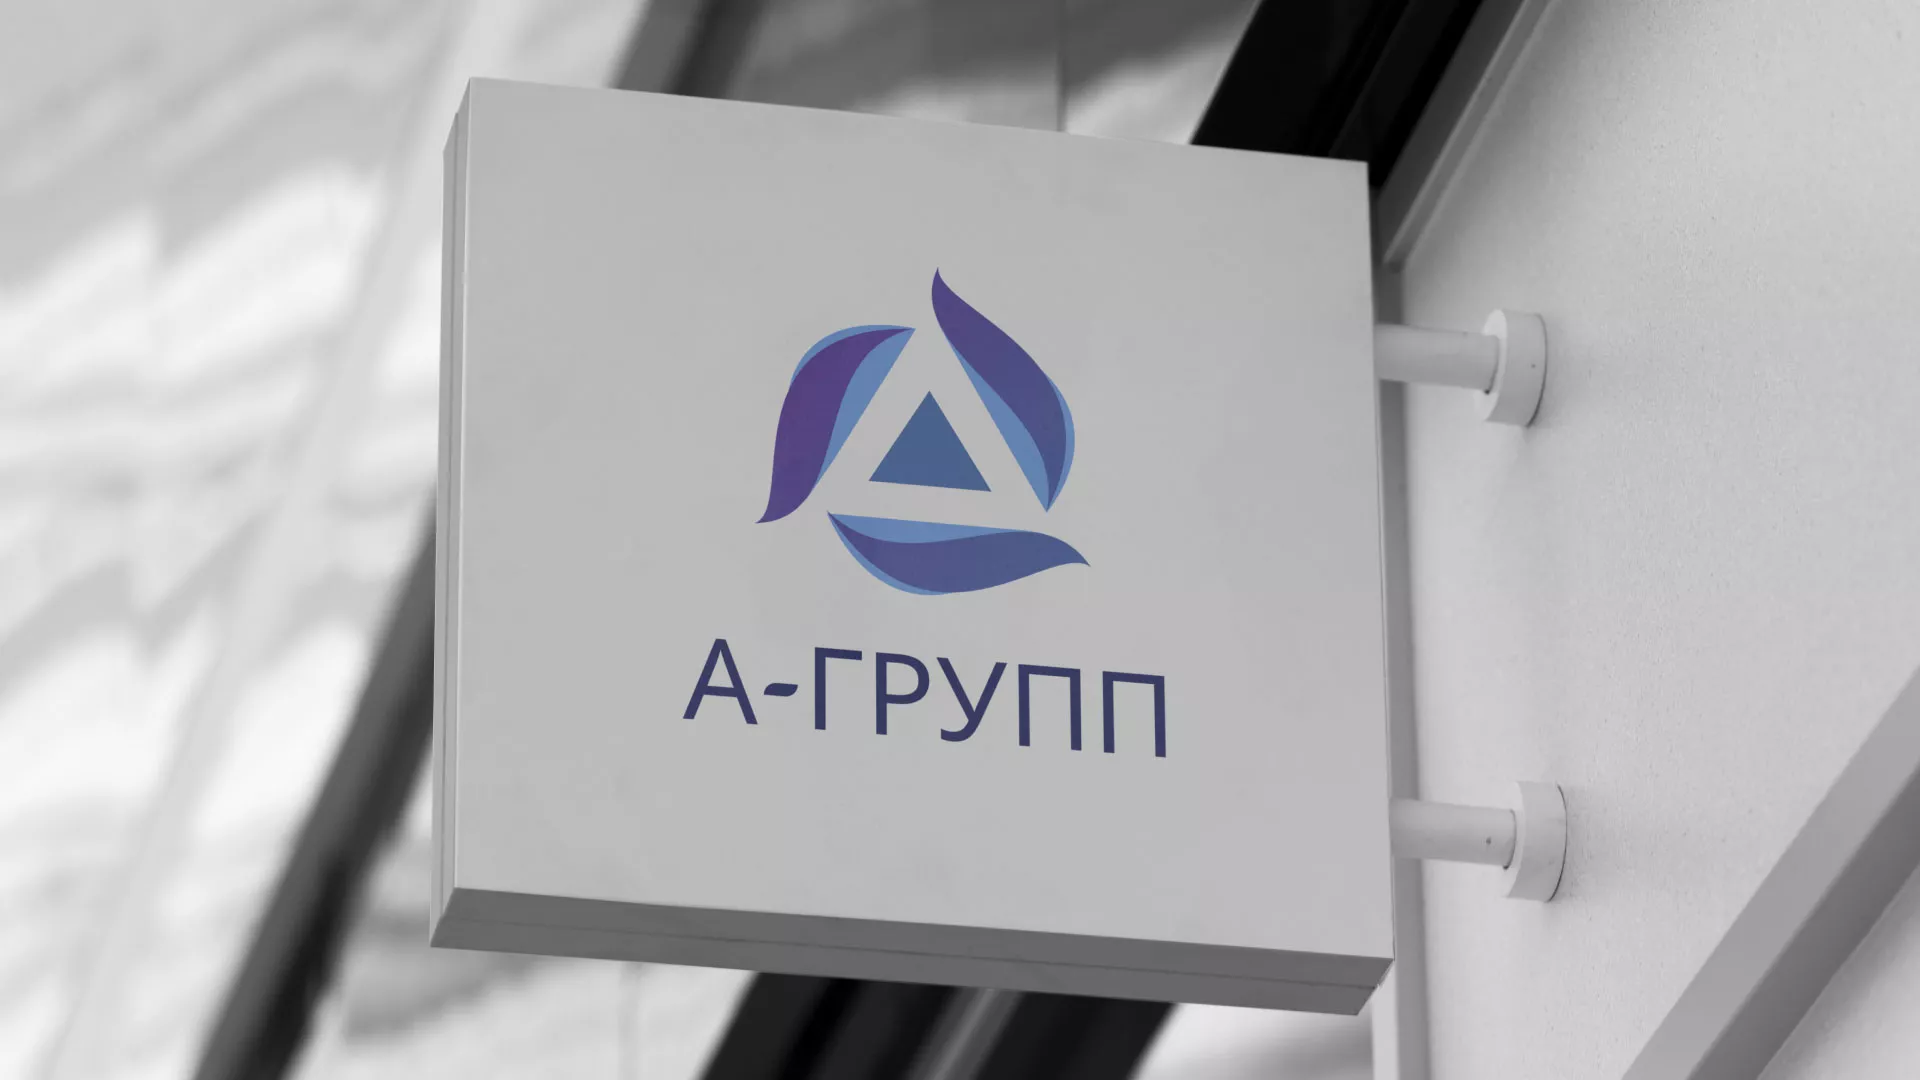 Создание логотипа компании «А-ГРУПП» в Болхове